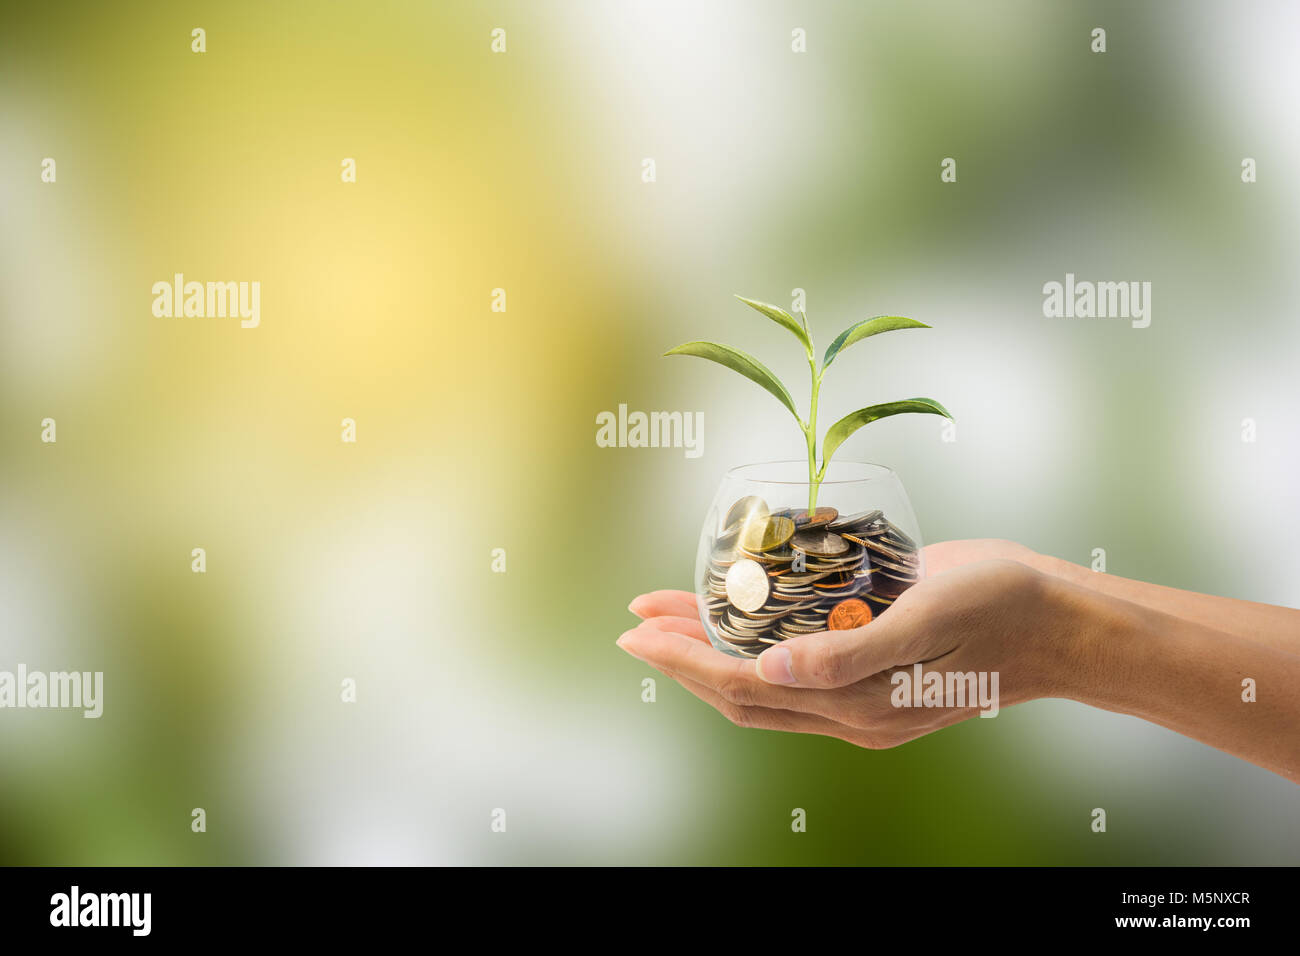 L'épargne, de l'investissement concept. Hand holding Coin dans un bocal en verre avec arbre vert avec la nature comme arrière-plan. Conceptual économiser de l'argent pour l'avenir. Banque D'Images